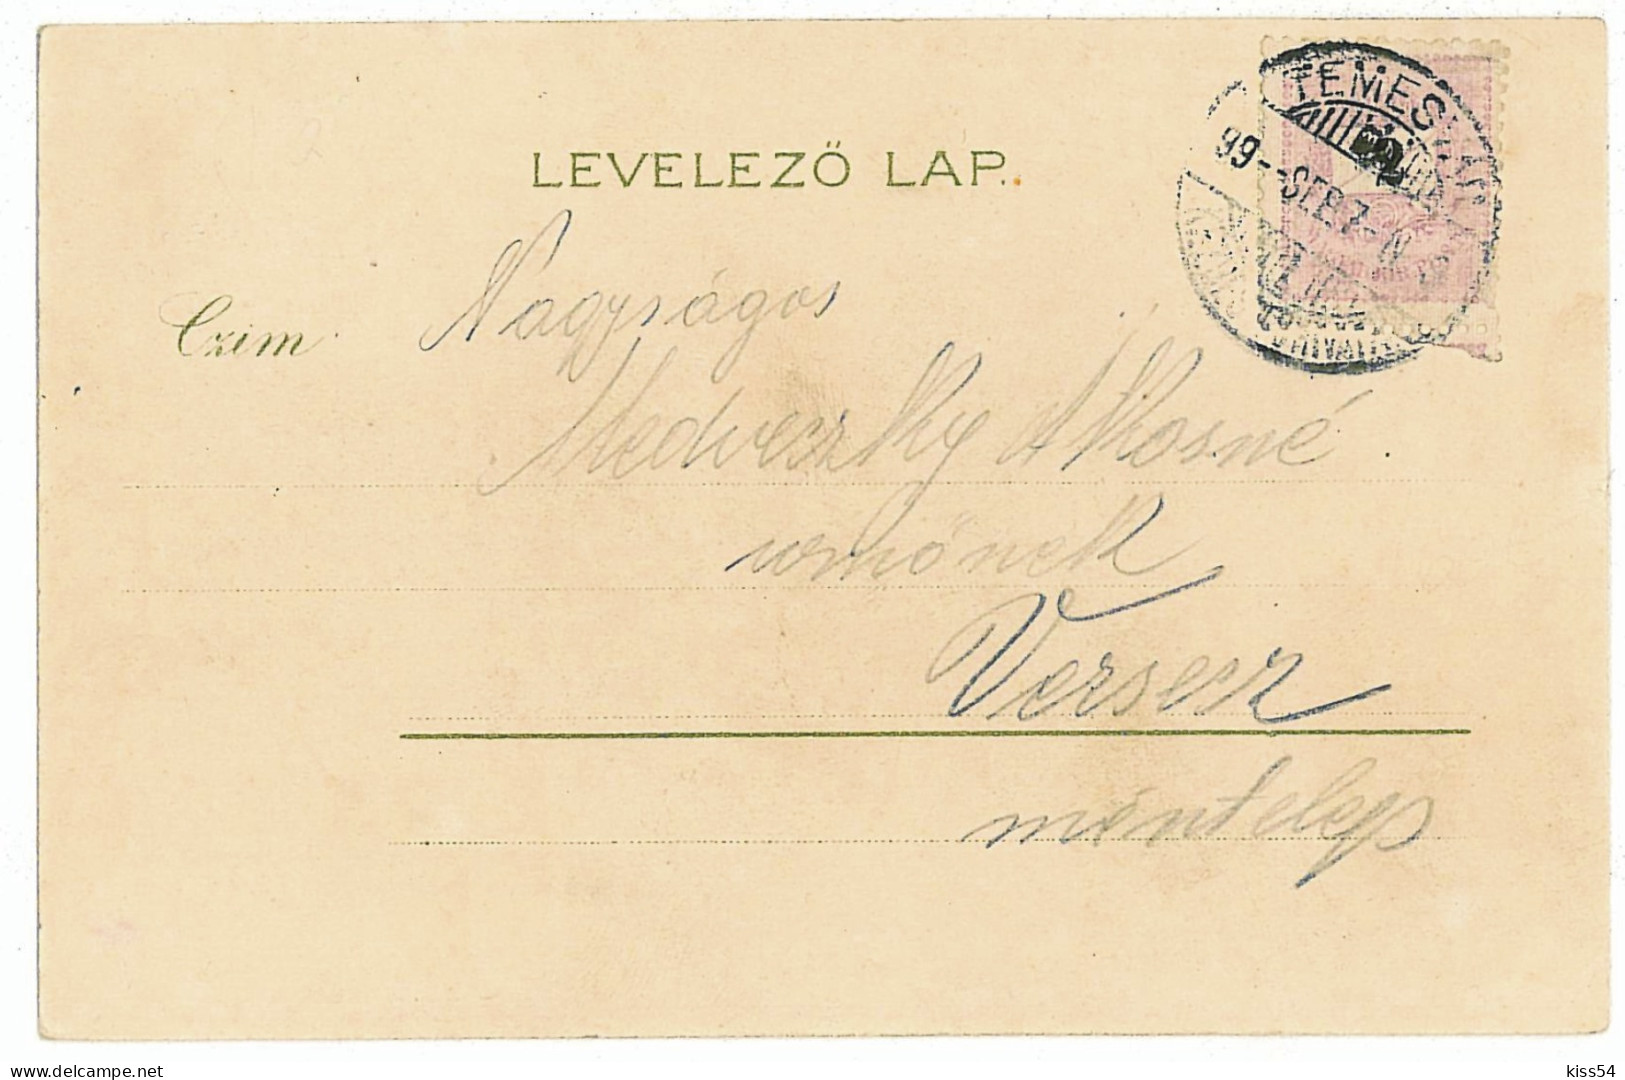 RO 82 - 1034 Timisoara, SYNAGOGUE, Litho, Romania - Old Postcard - Used - 1899 - Romania